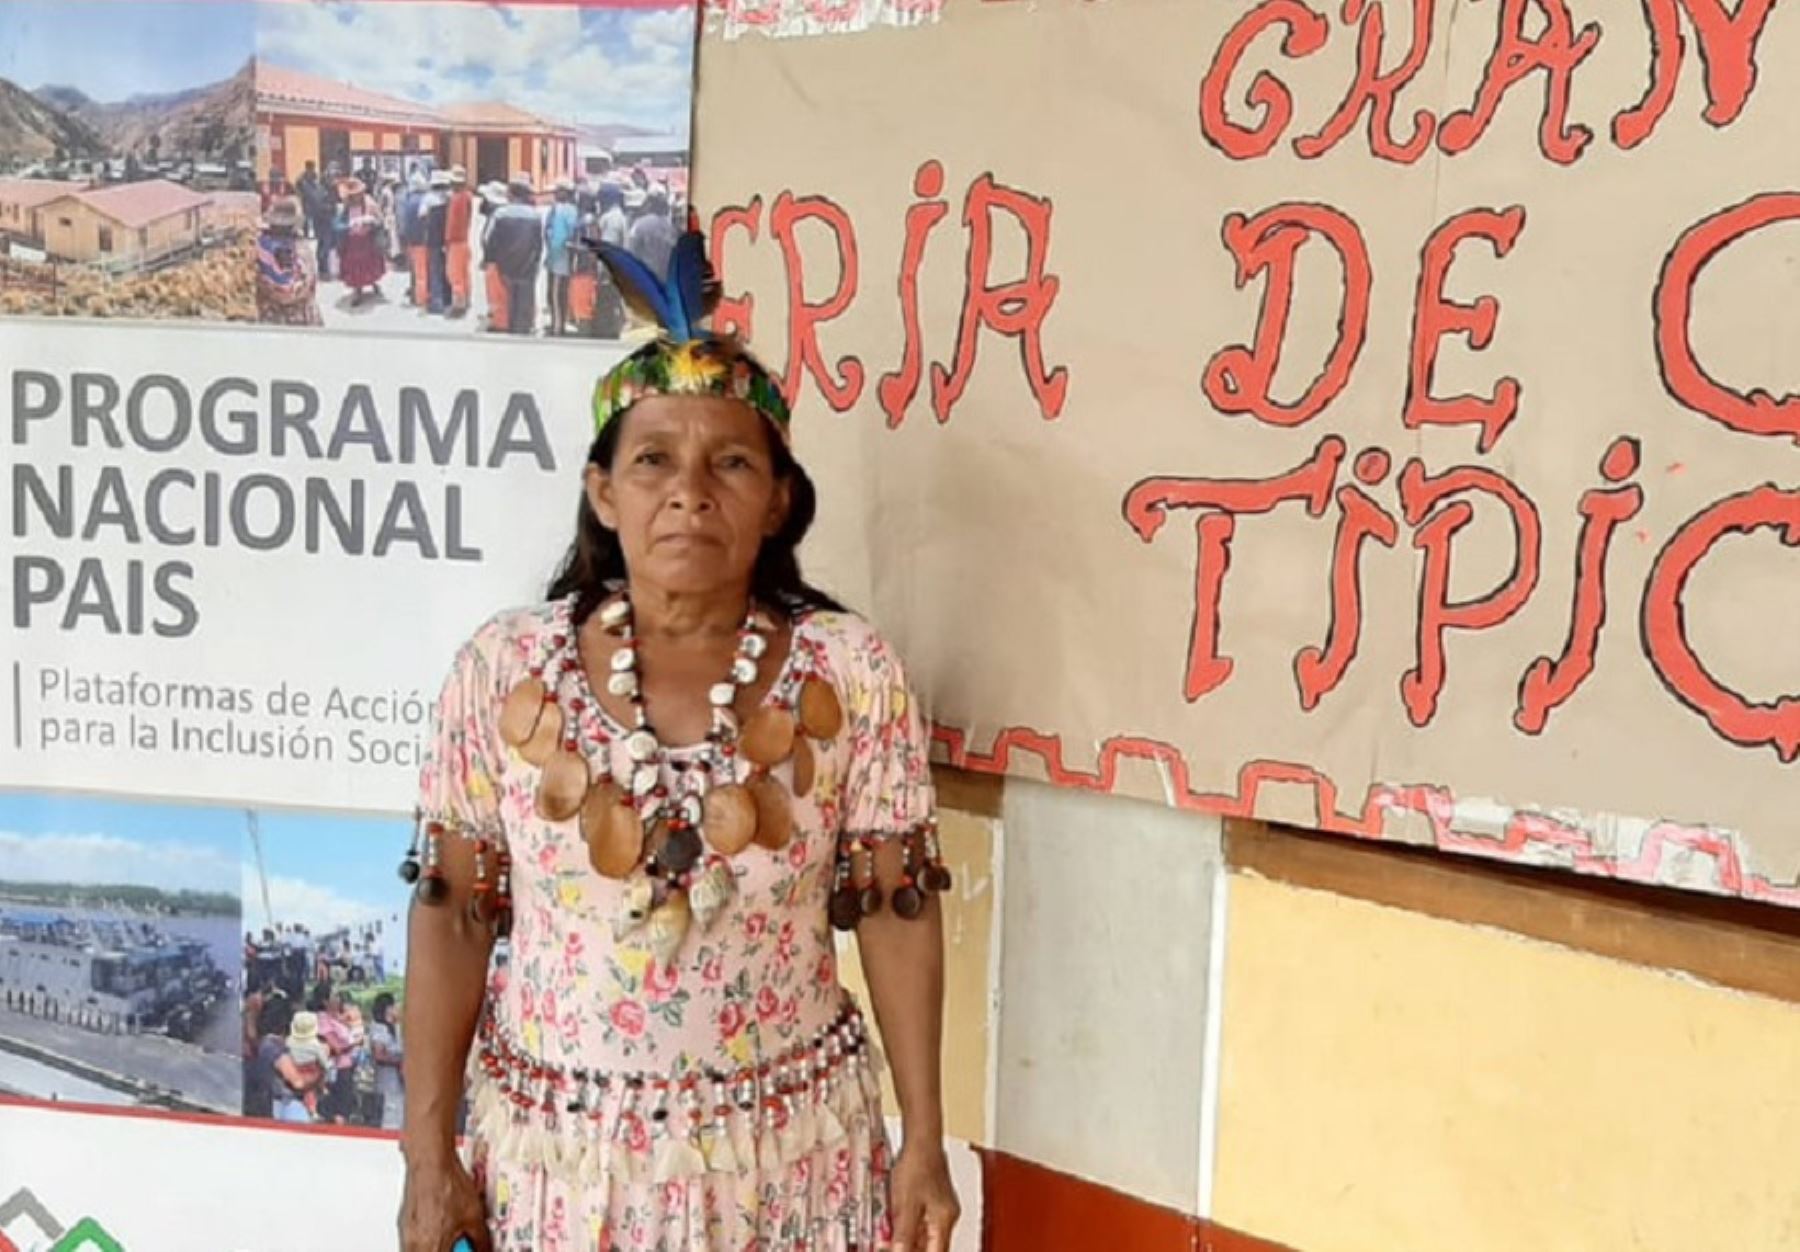 Noemí Ushihua tiene 42 años y vive orgullosa de sus raíces loretanas. Es agricultora, artesana y emprendedora. Desde el 2018, Noemí es una lideresa kichwa, querida y valorada por toda su comunidad.